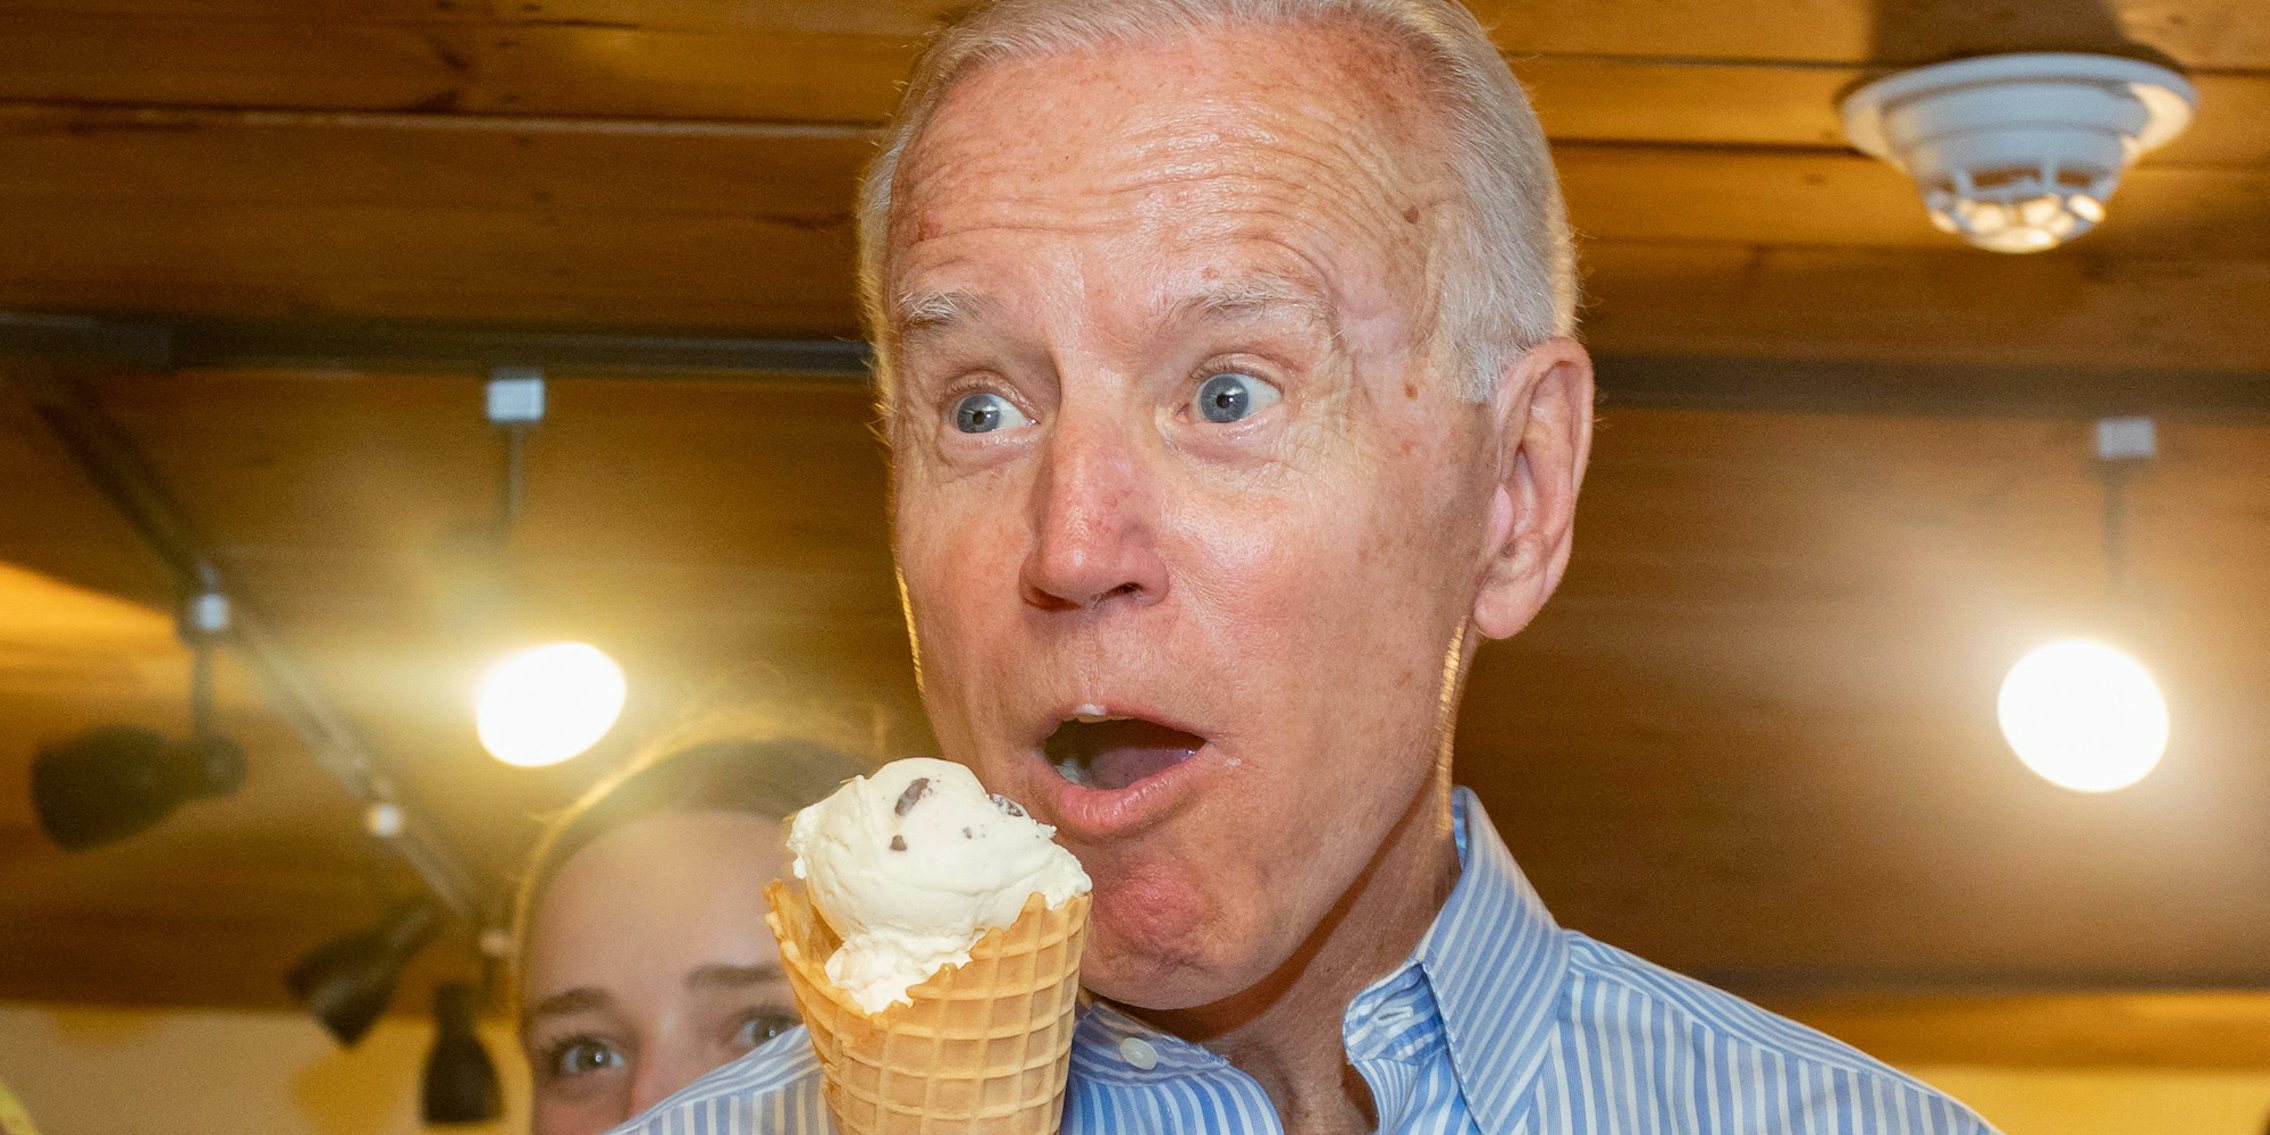 Joe Biden excitedly eating ice cream